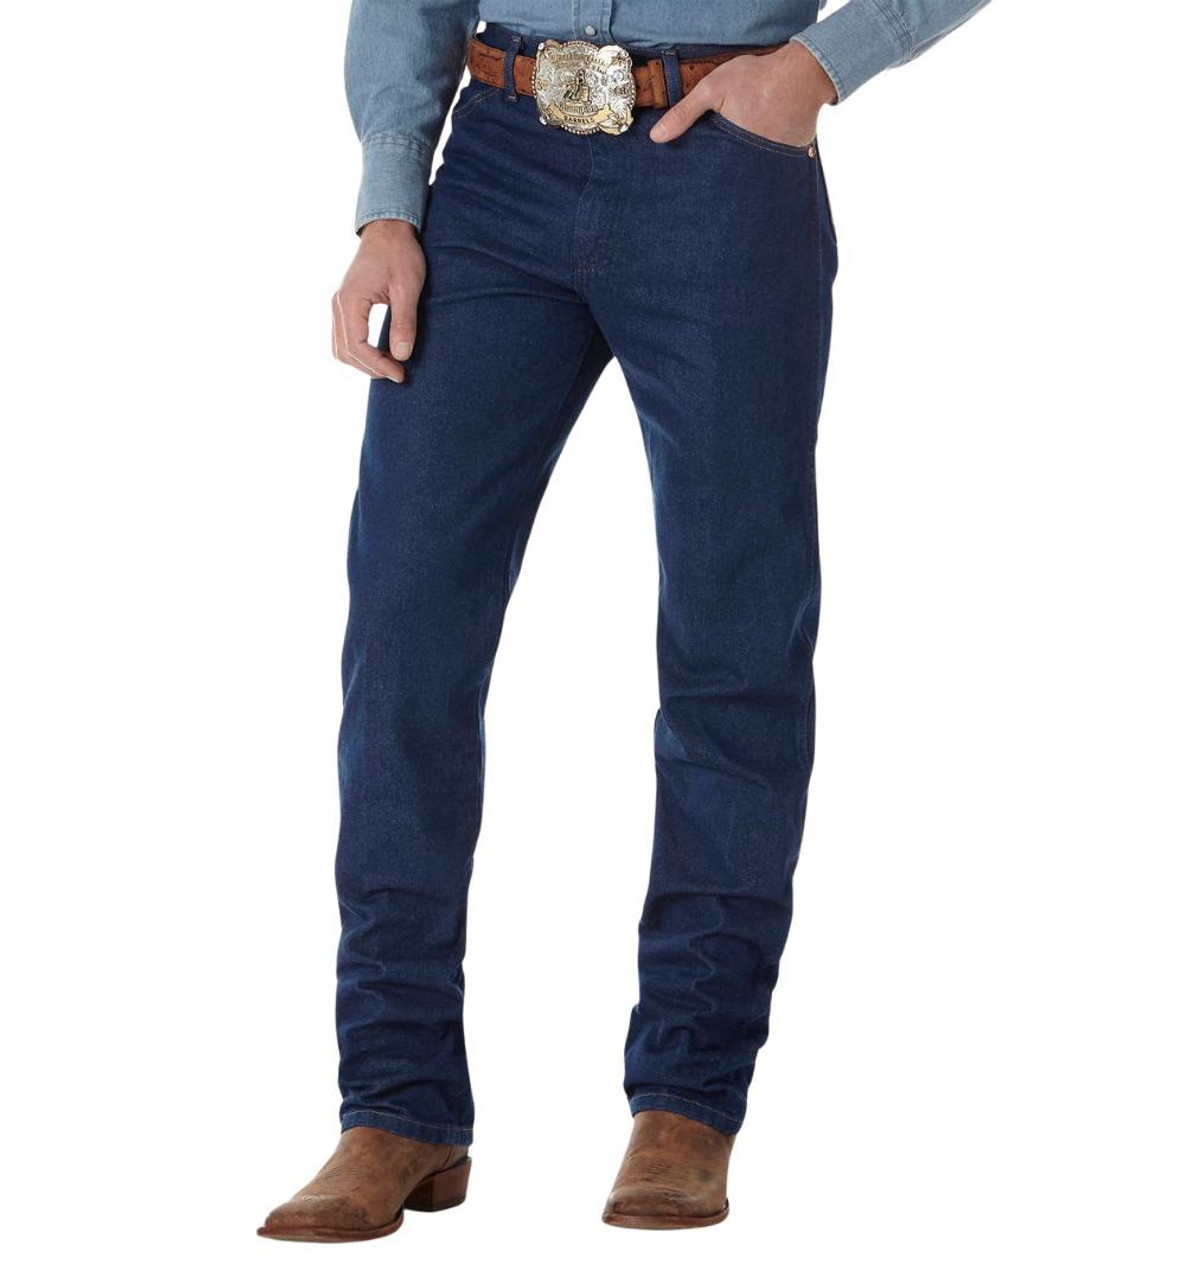 Wrangler Cowboy Cut Original Fit Jeans - Mens Jeans